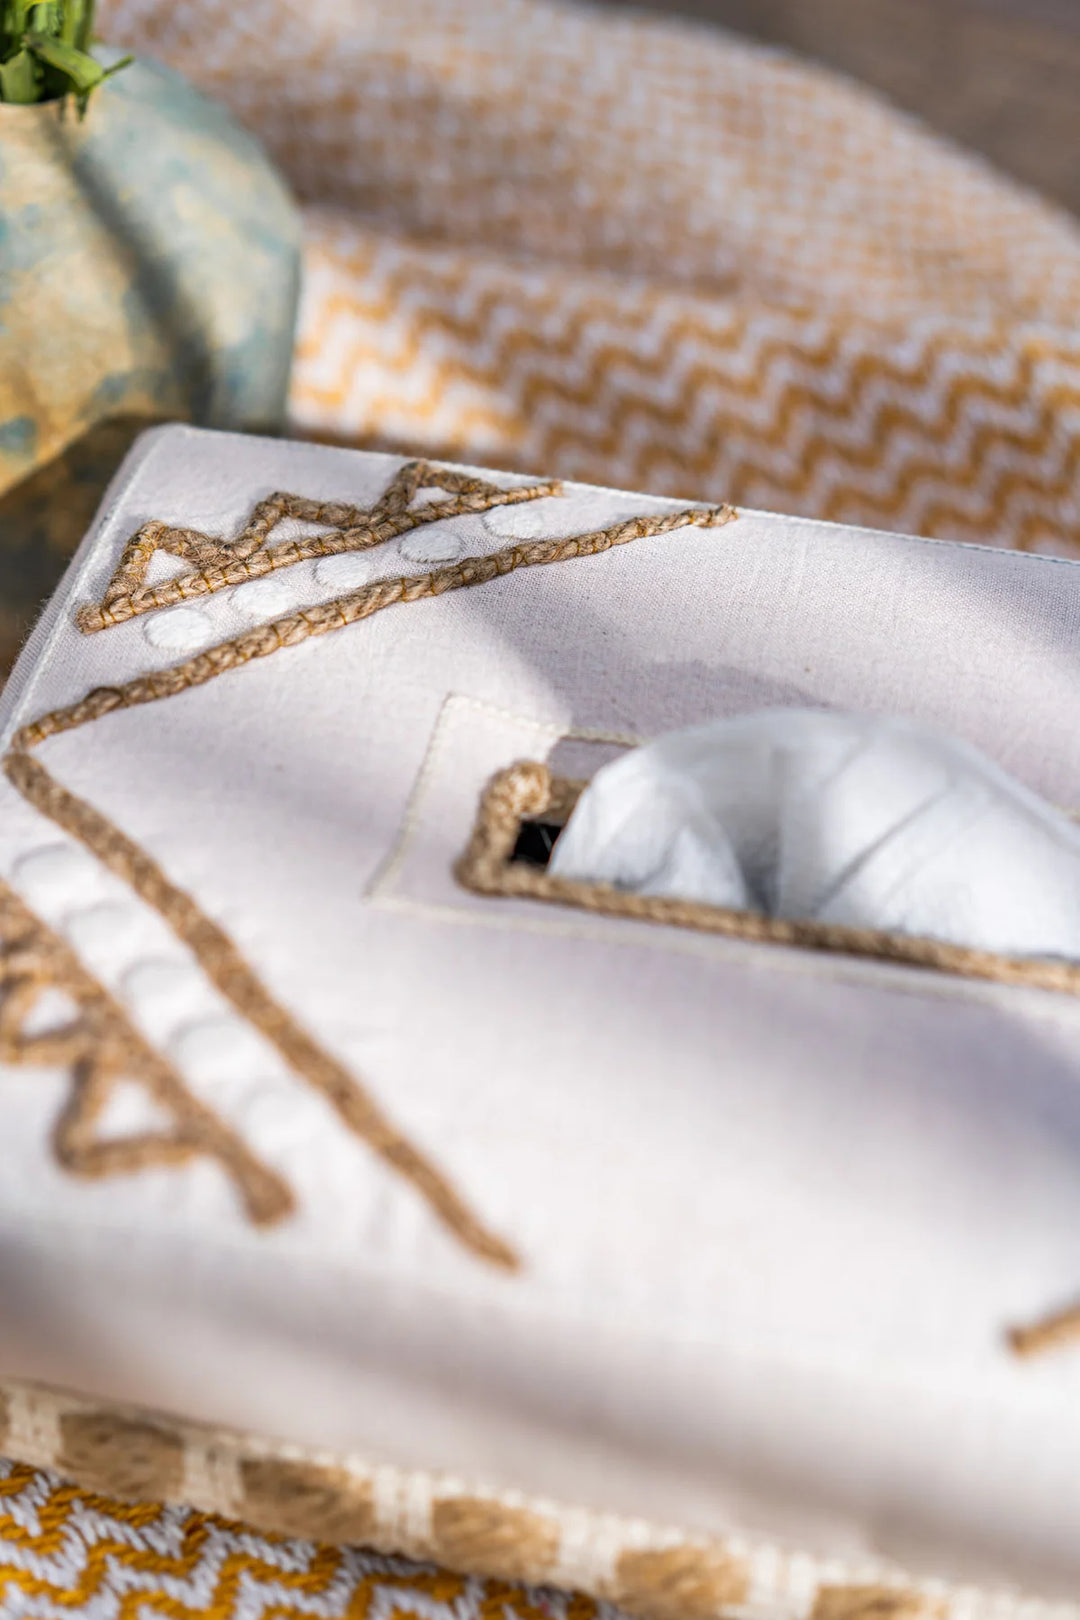 Artistic Handwoven Cotton Tissue Box | Sheba Hand Woven Cotton Tissue Box - White